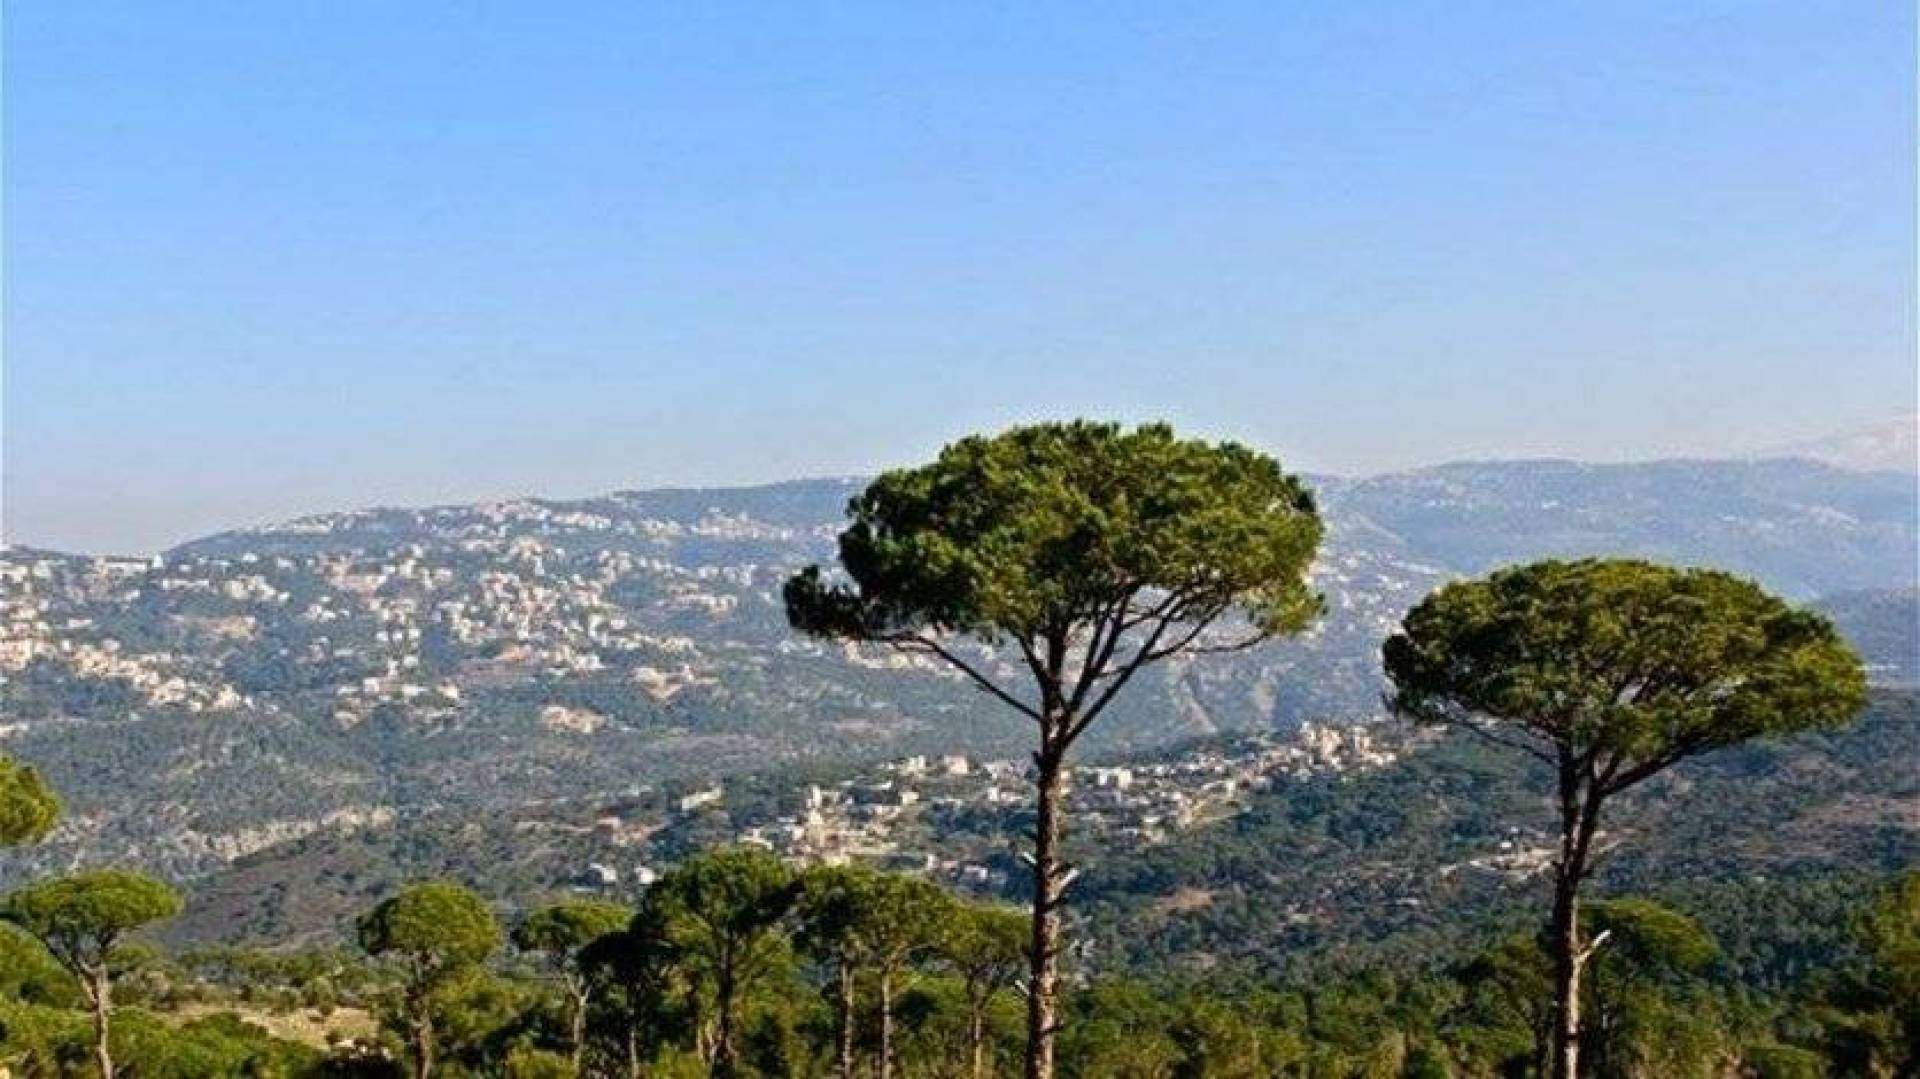  طقس ربيعي مستقر يسيطر على لبنان ورتفاع ملموس بدرجات الحرارة 